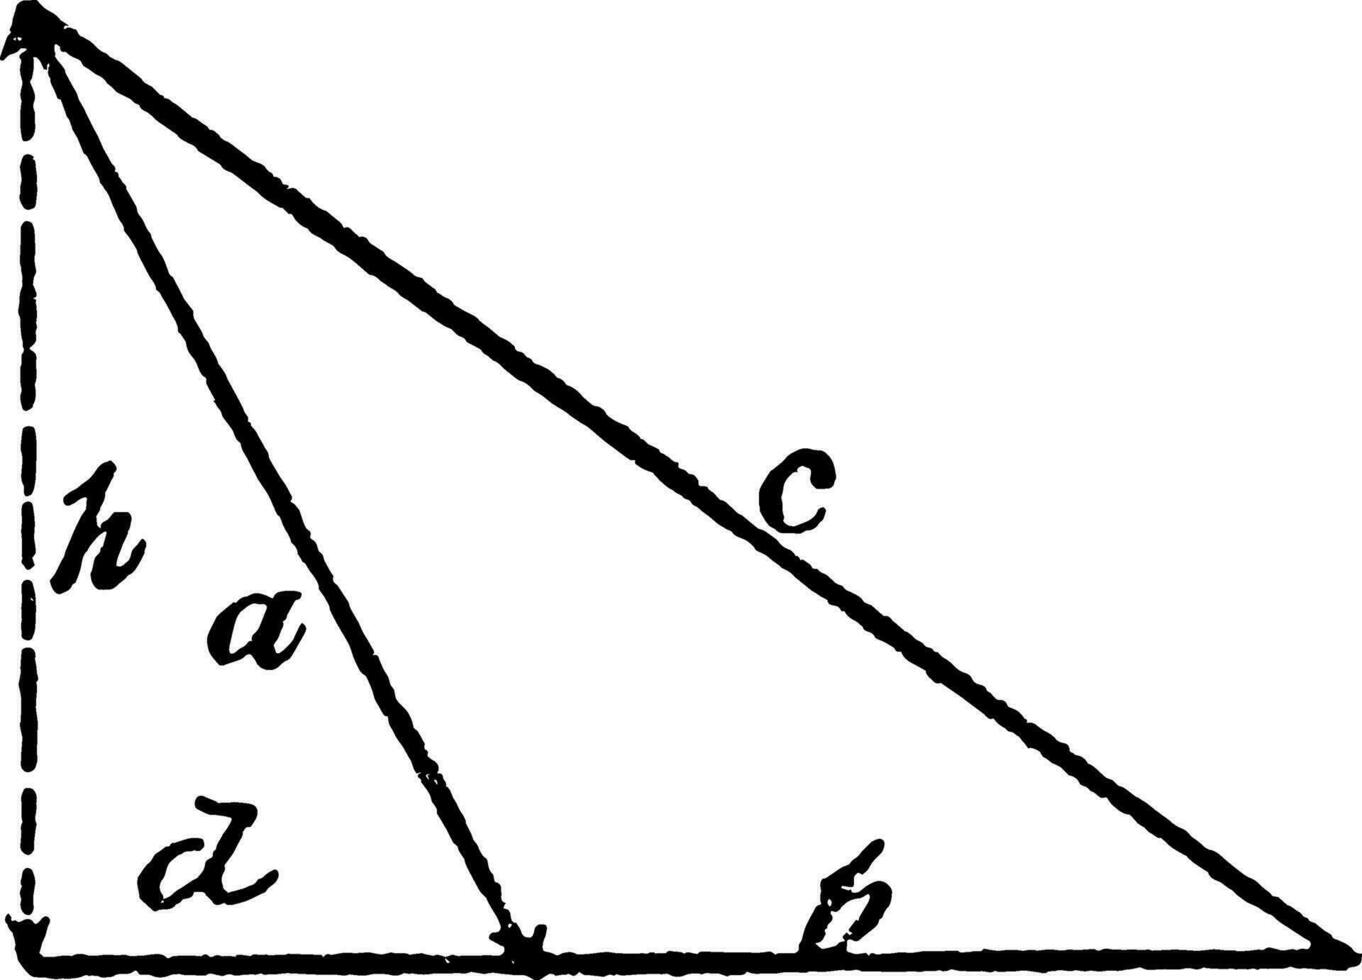 Obtuse Triangle vintage illustration. vector